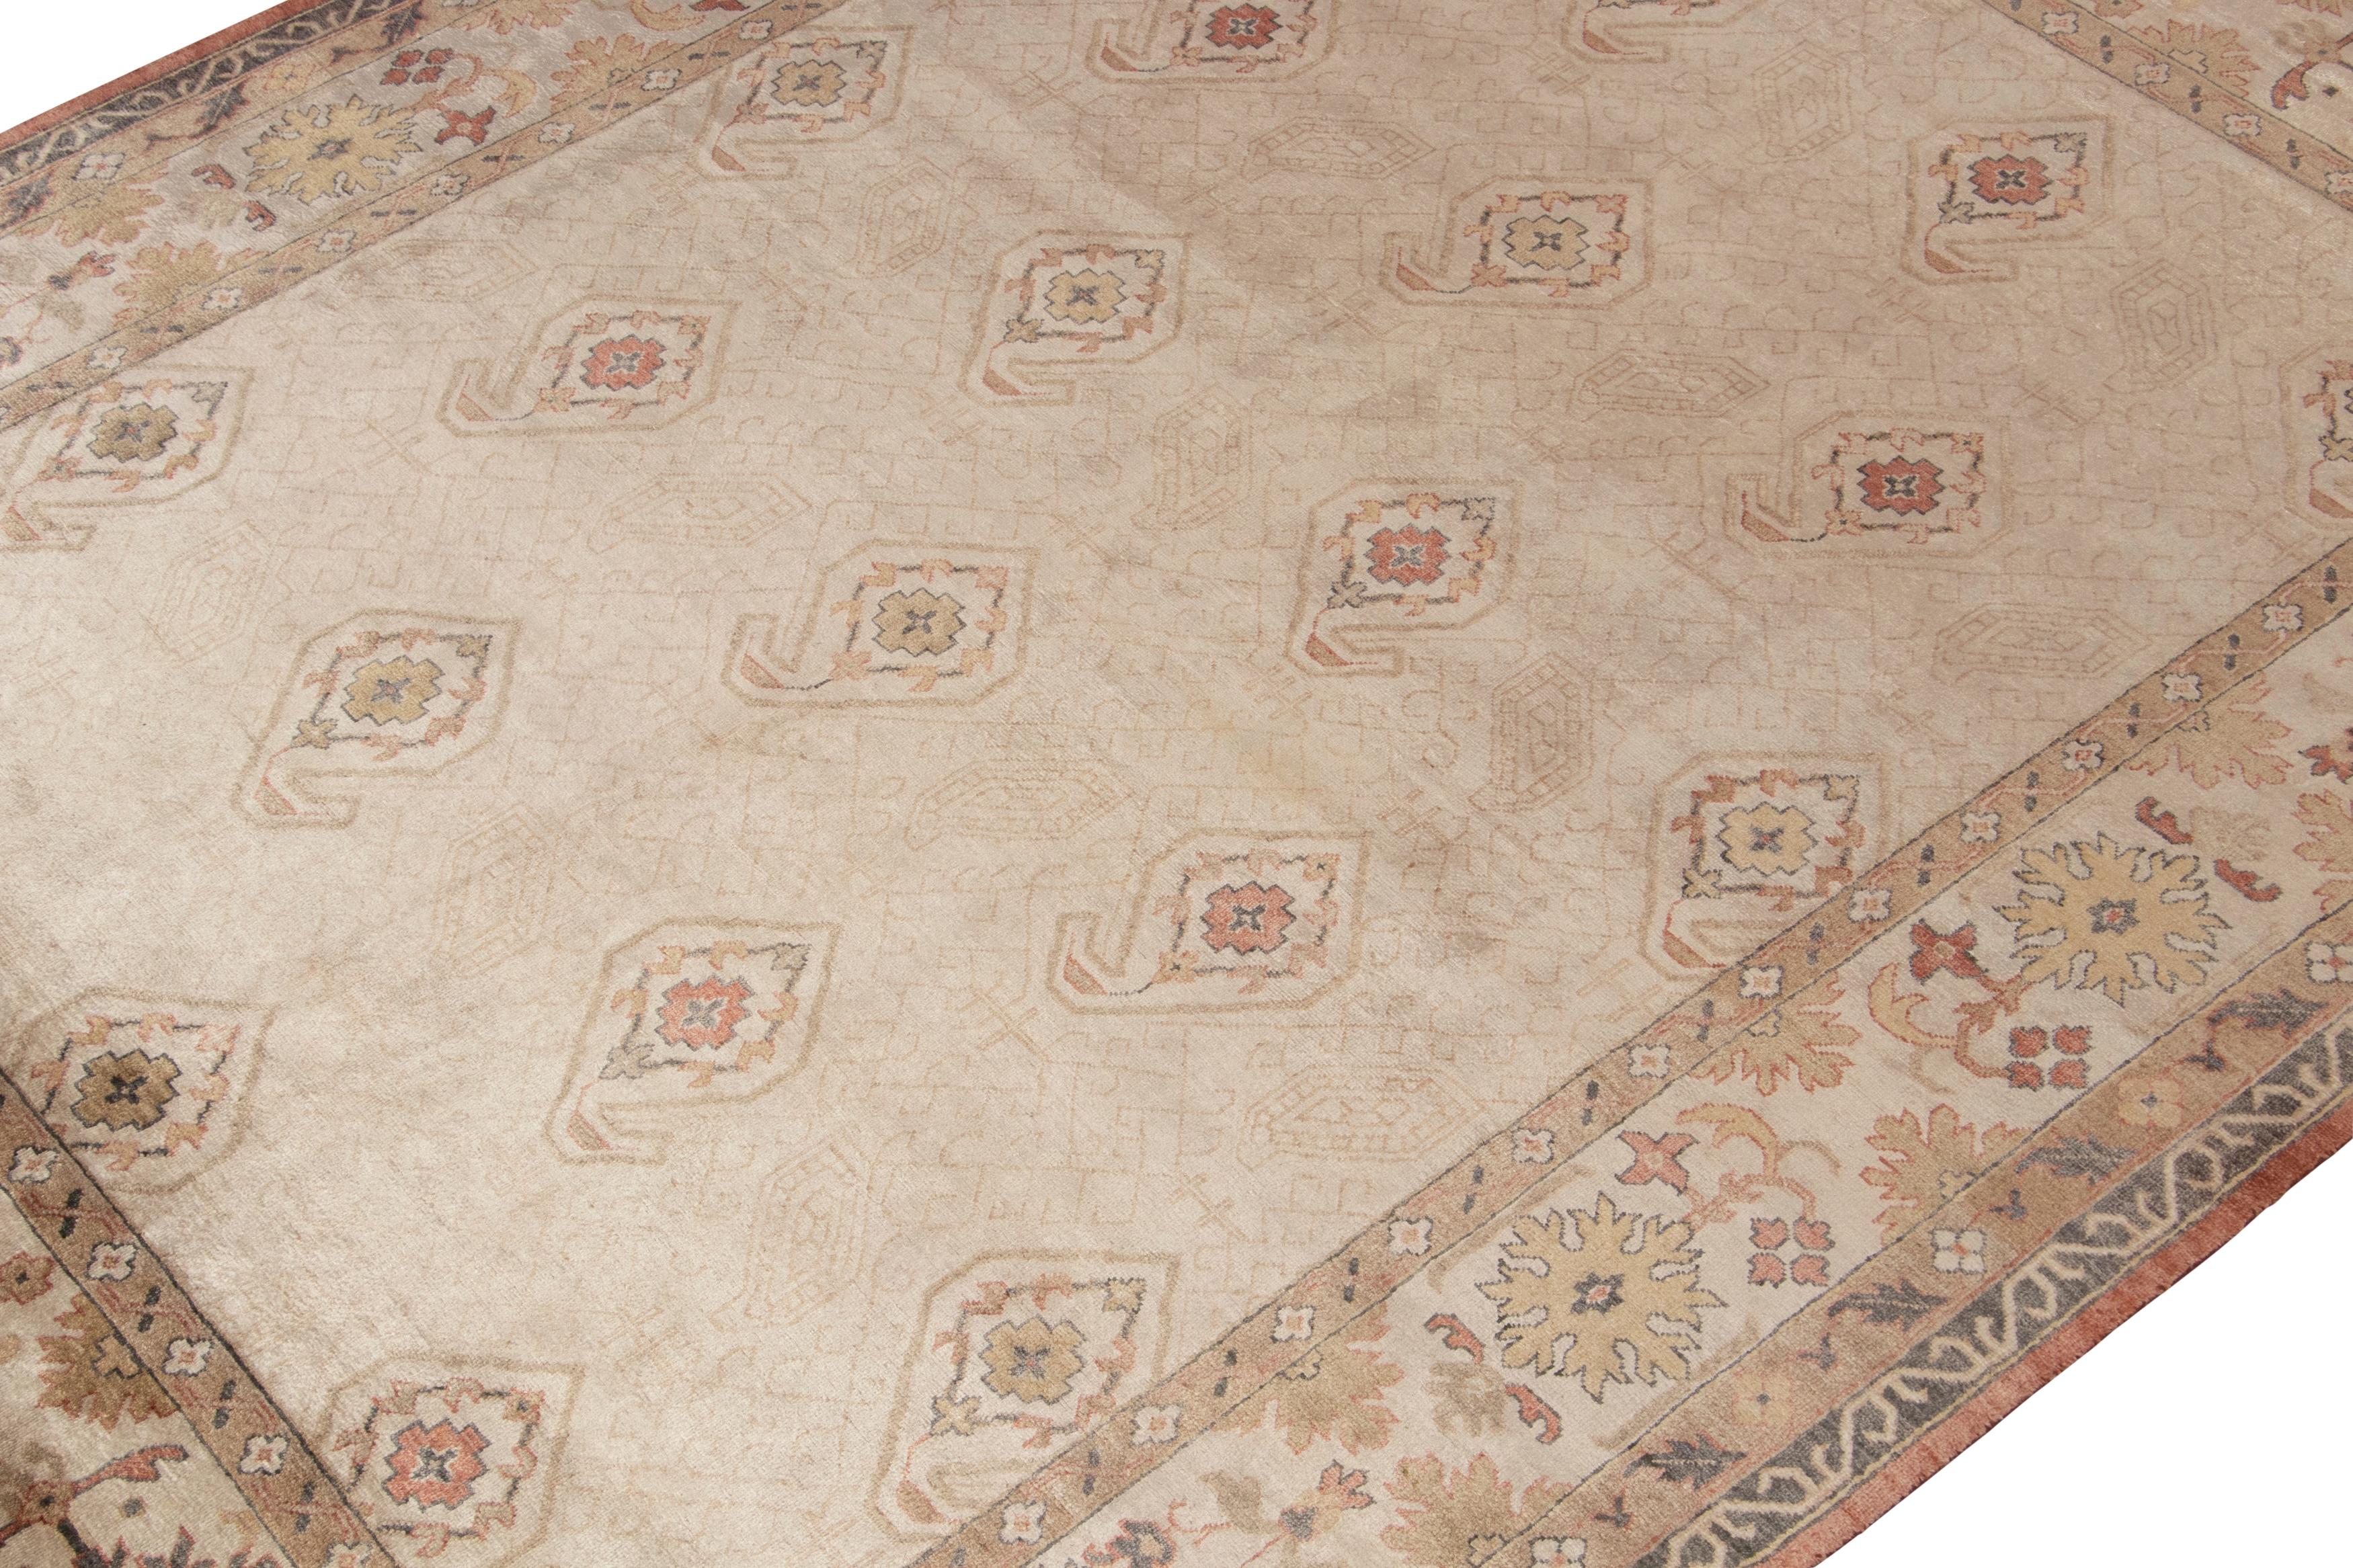 Ein 8x10 Teppich, inspiriert von antiken Stammesteppichen mit geometrischen Versionen von Paisley-Blumenmustern. Handgeknüpft aus Wolle, die ein helles Elfenbein und Beige-Braun in floralen Mustern mit klassischer Anmut spielt.

Weiter zum